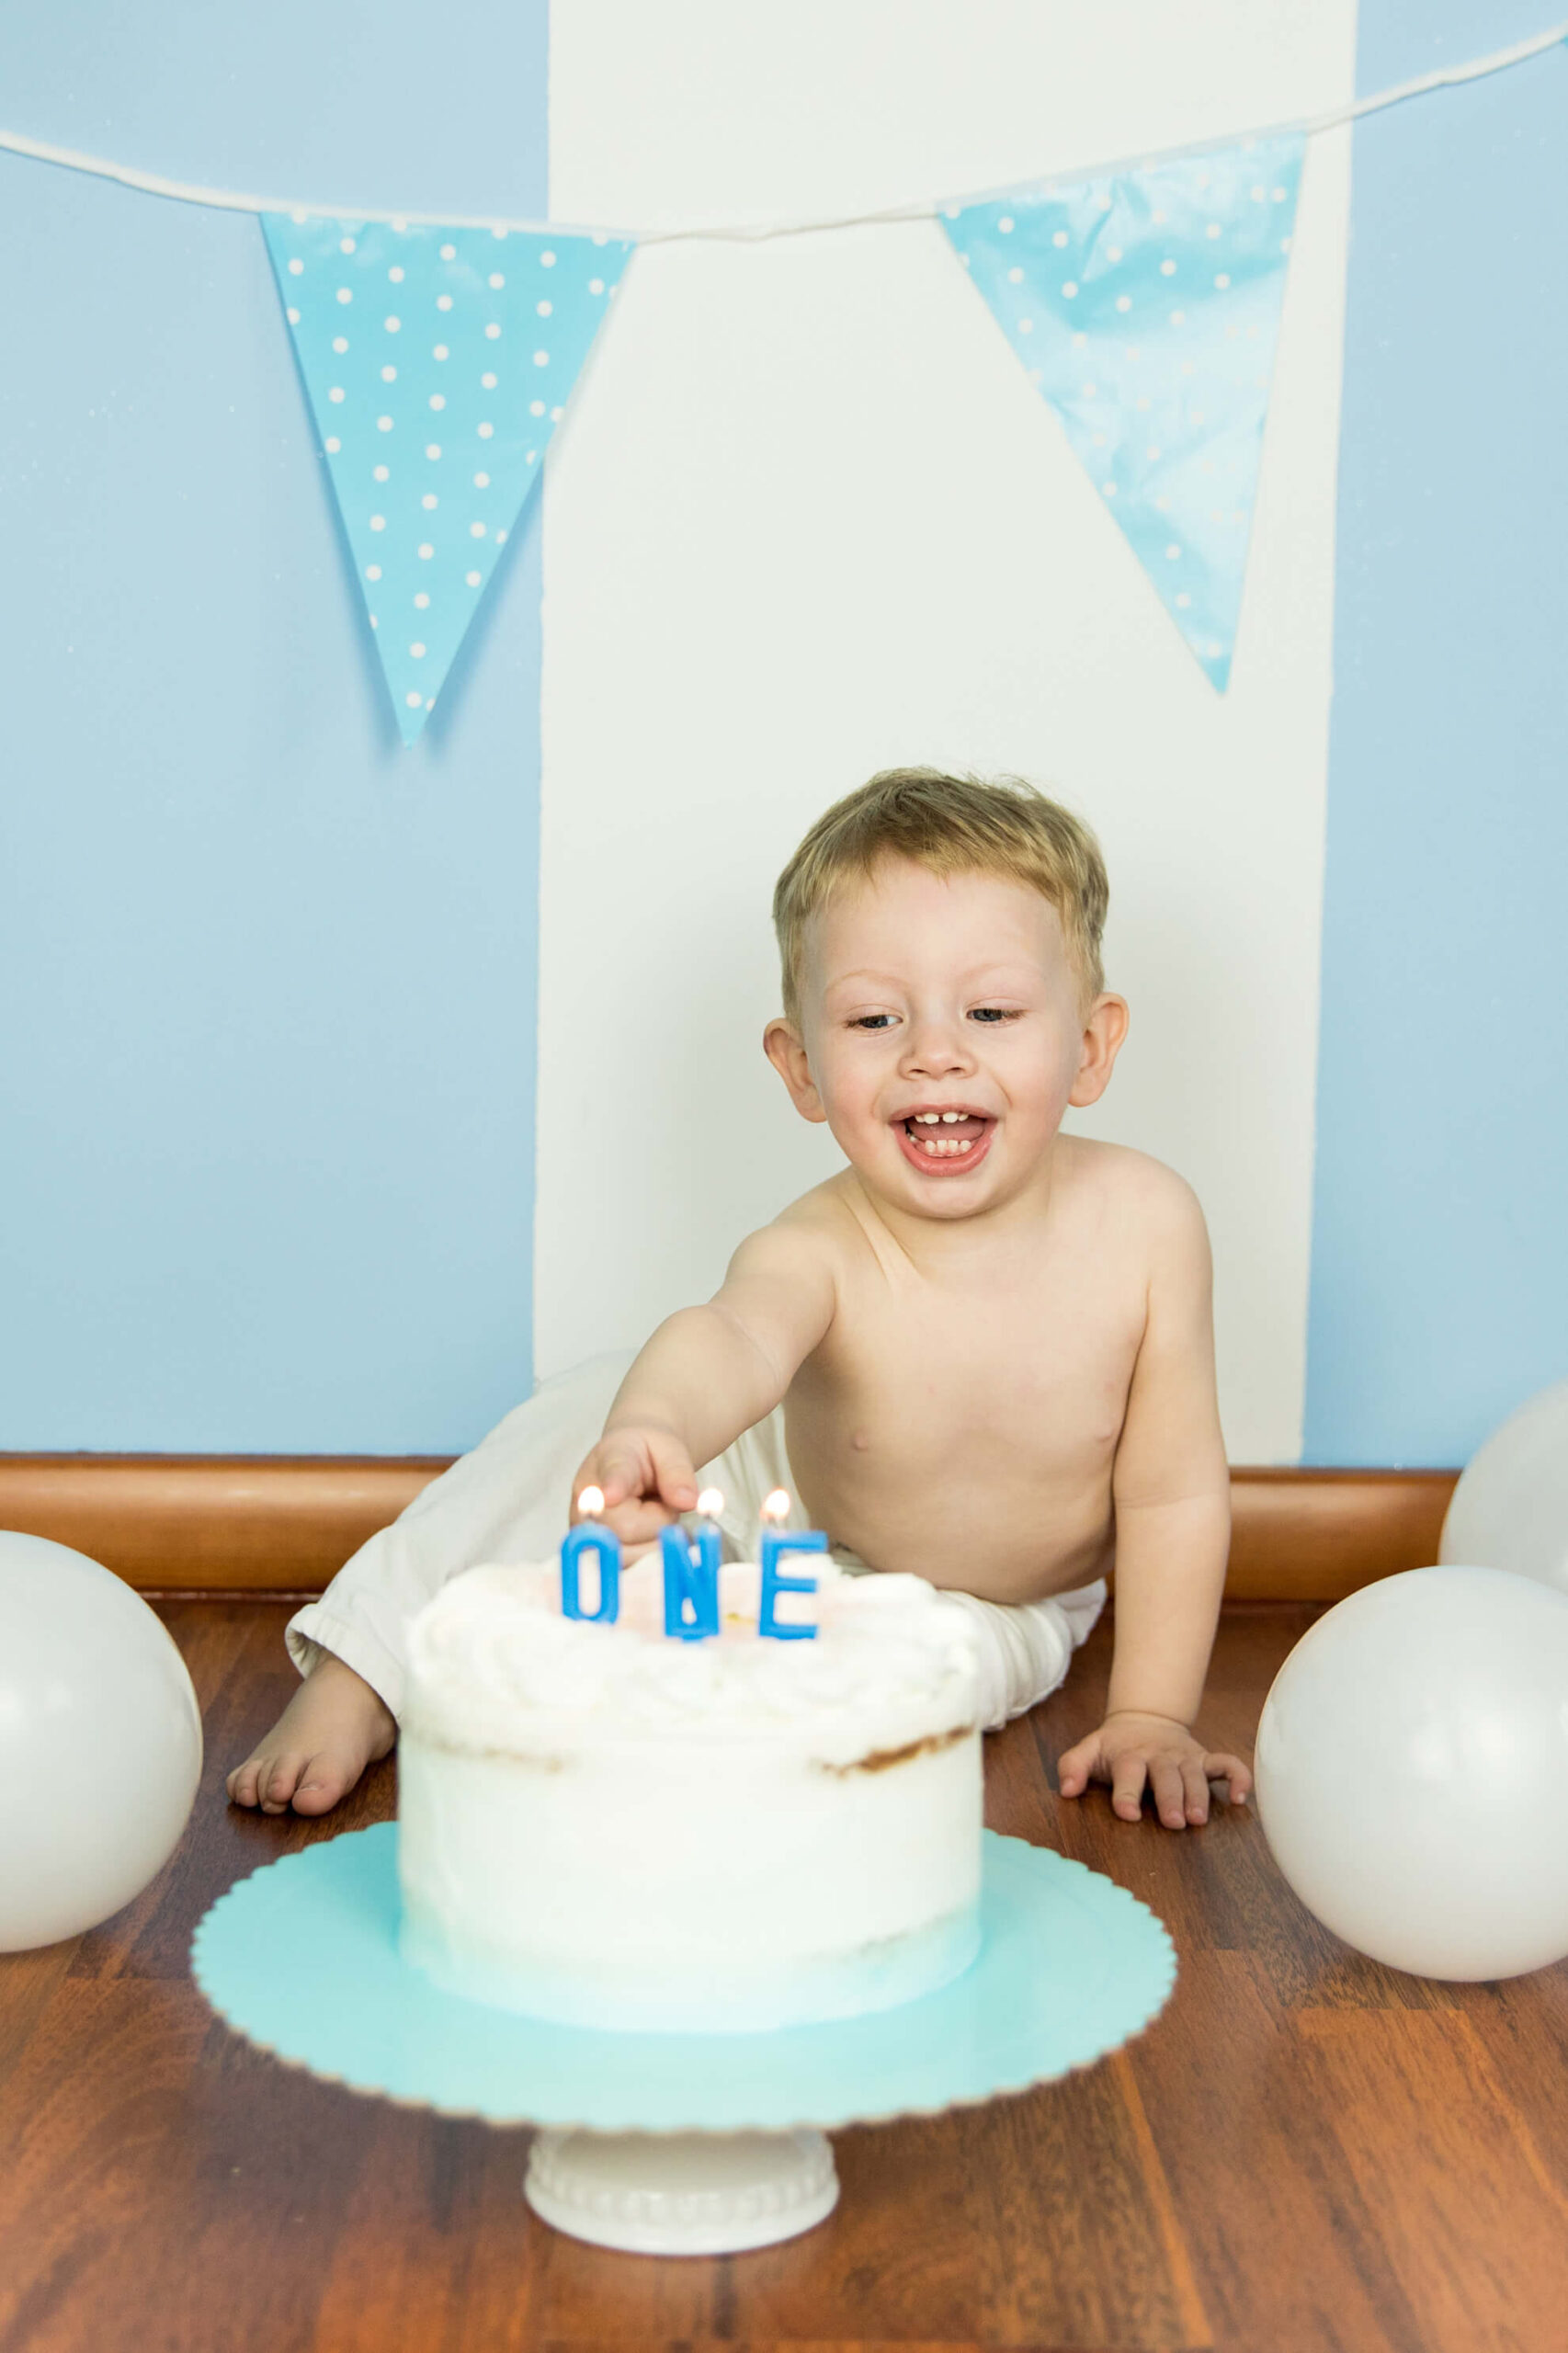 Primo compleanno? Festeggia con un servizio fotografico Smash cake!